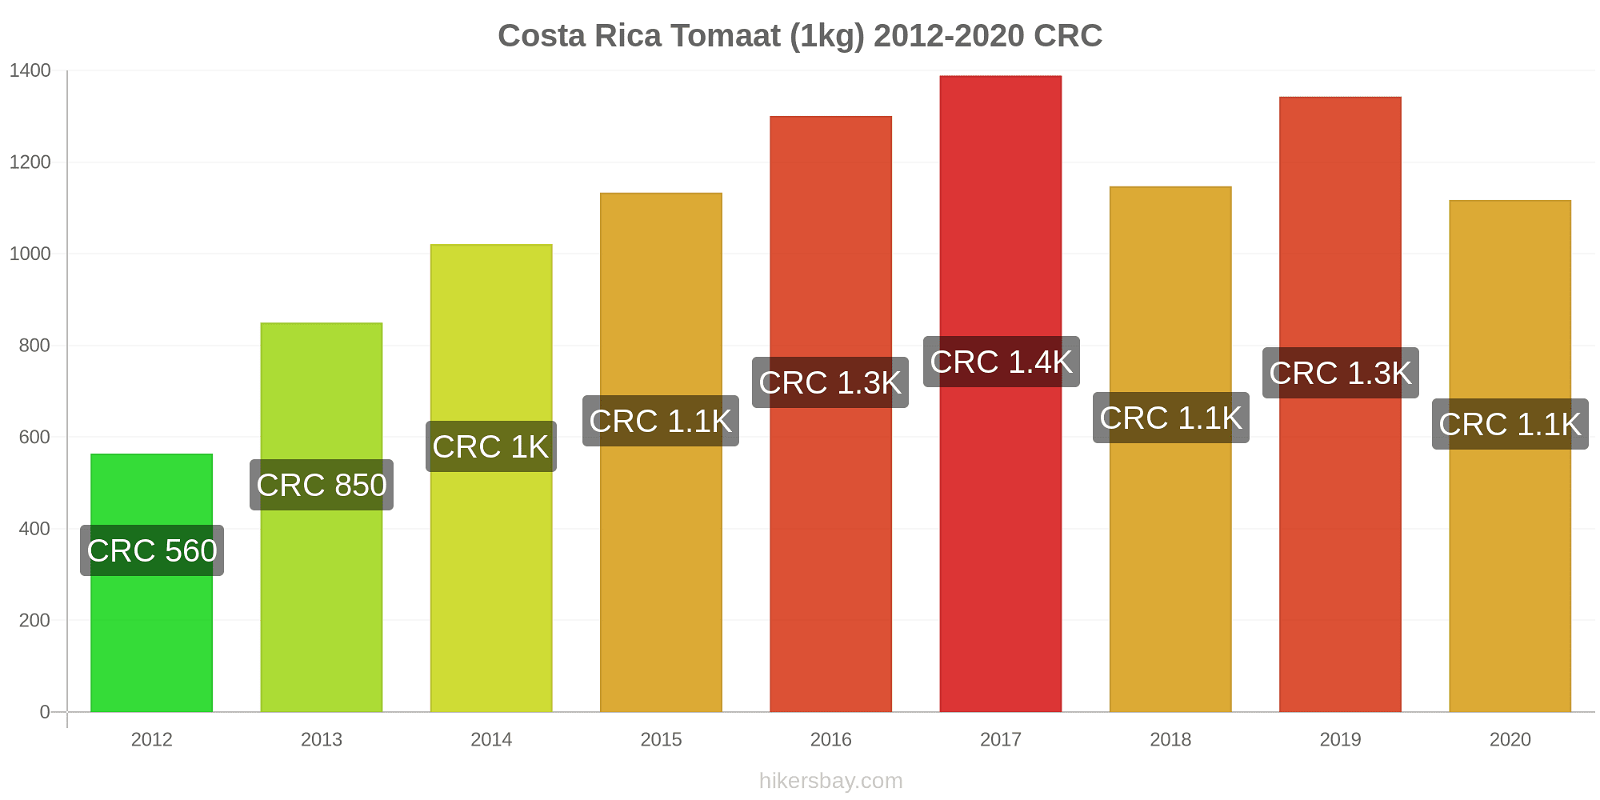 Costa Rica prijswijzigingen Tomaat (1kg) hikersbay.com